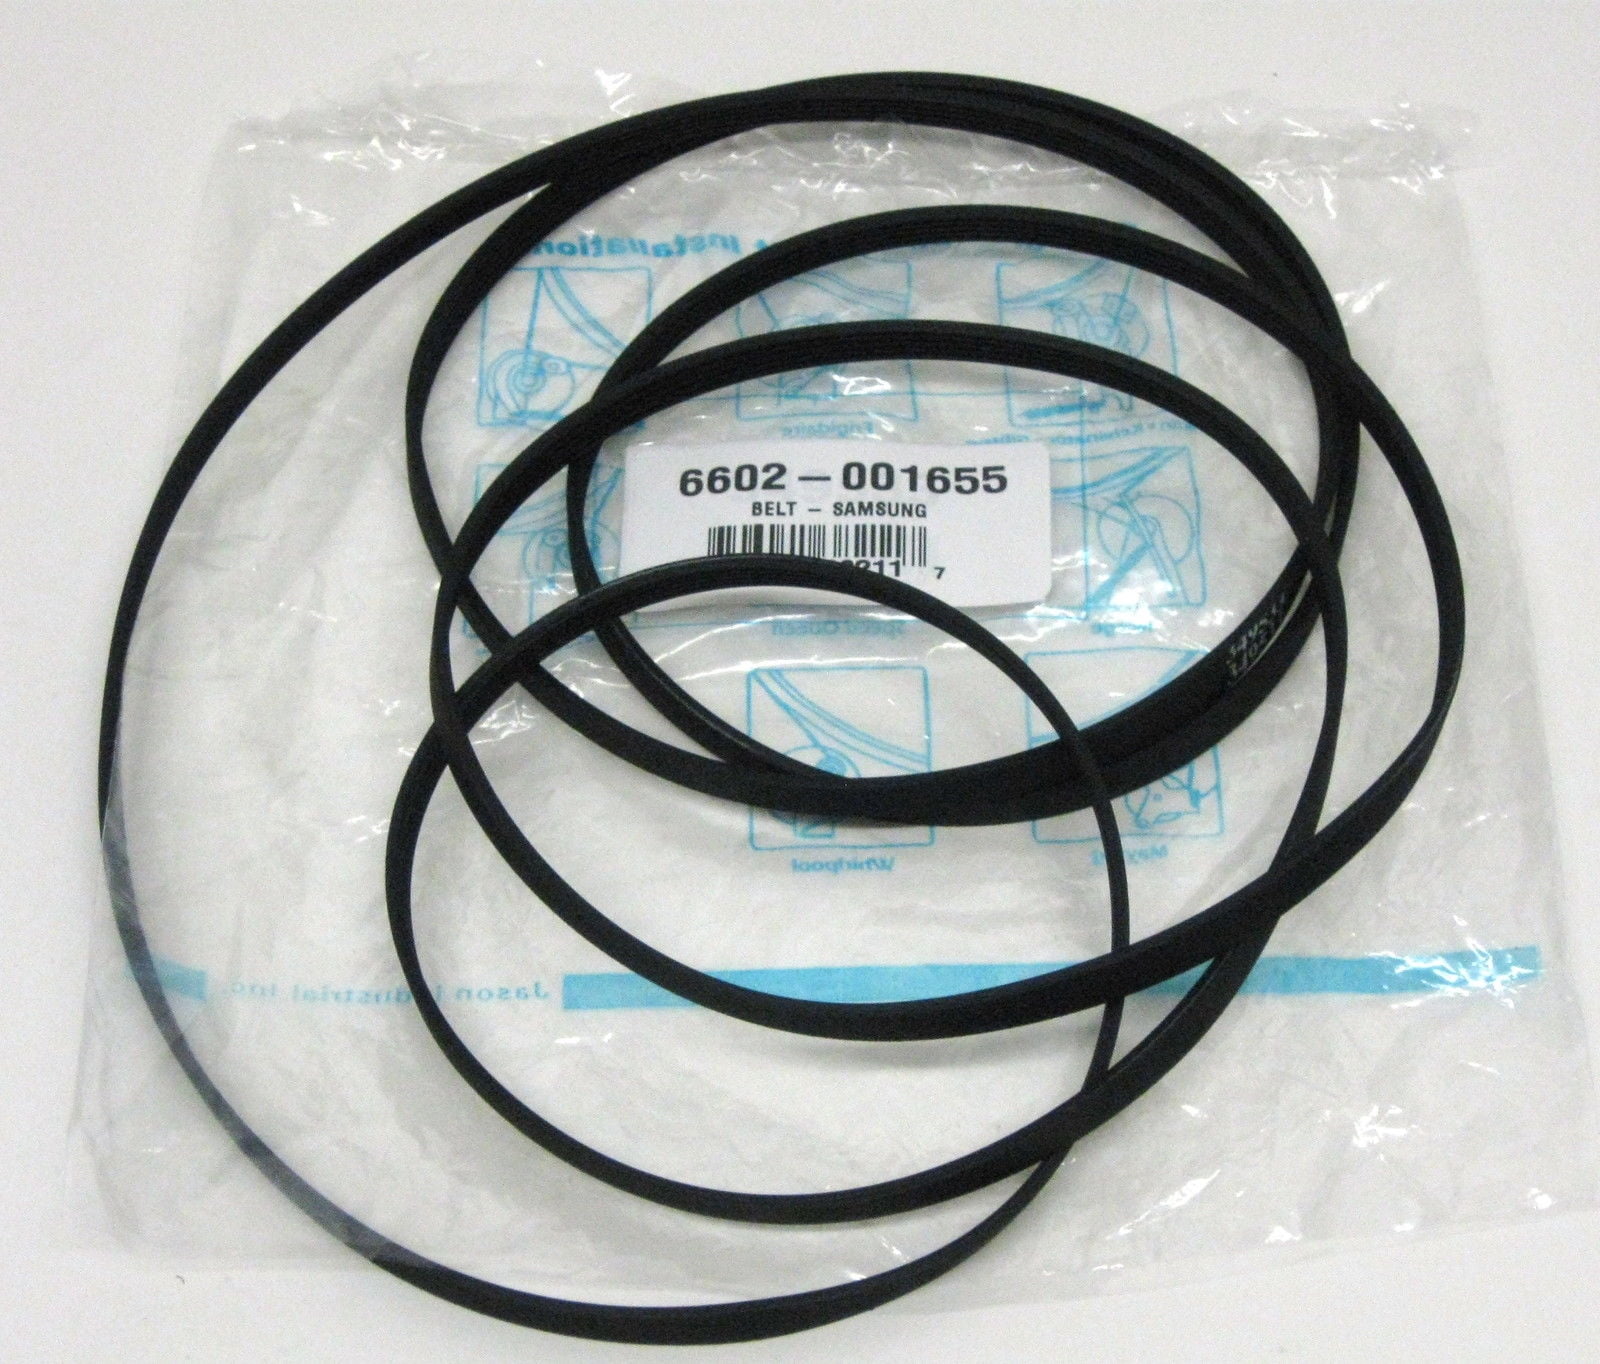 Samsung 6602-001655 Dryer Drum Belt Black for sale online 